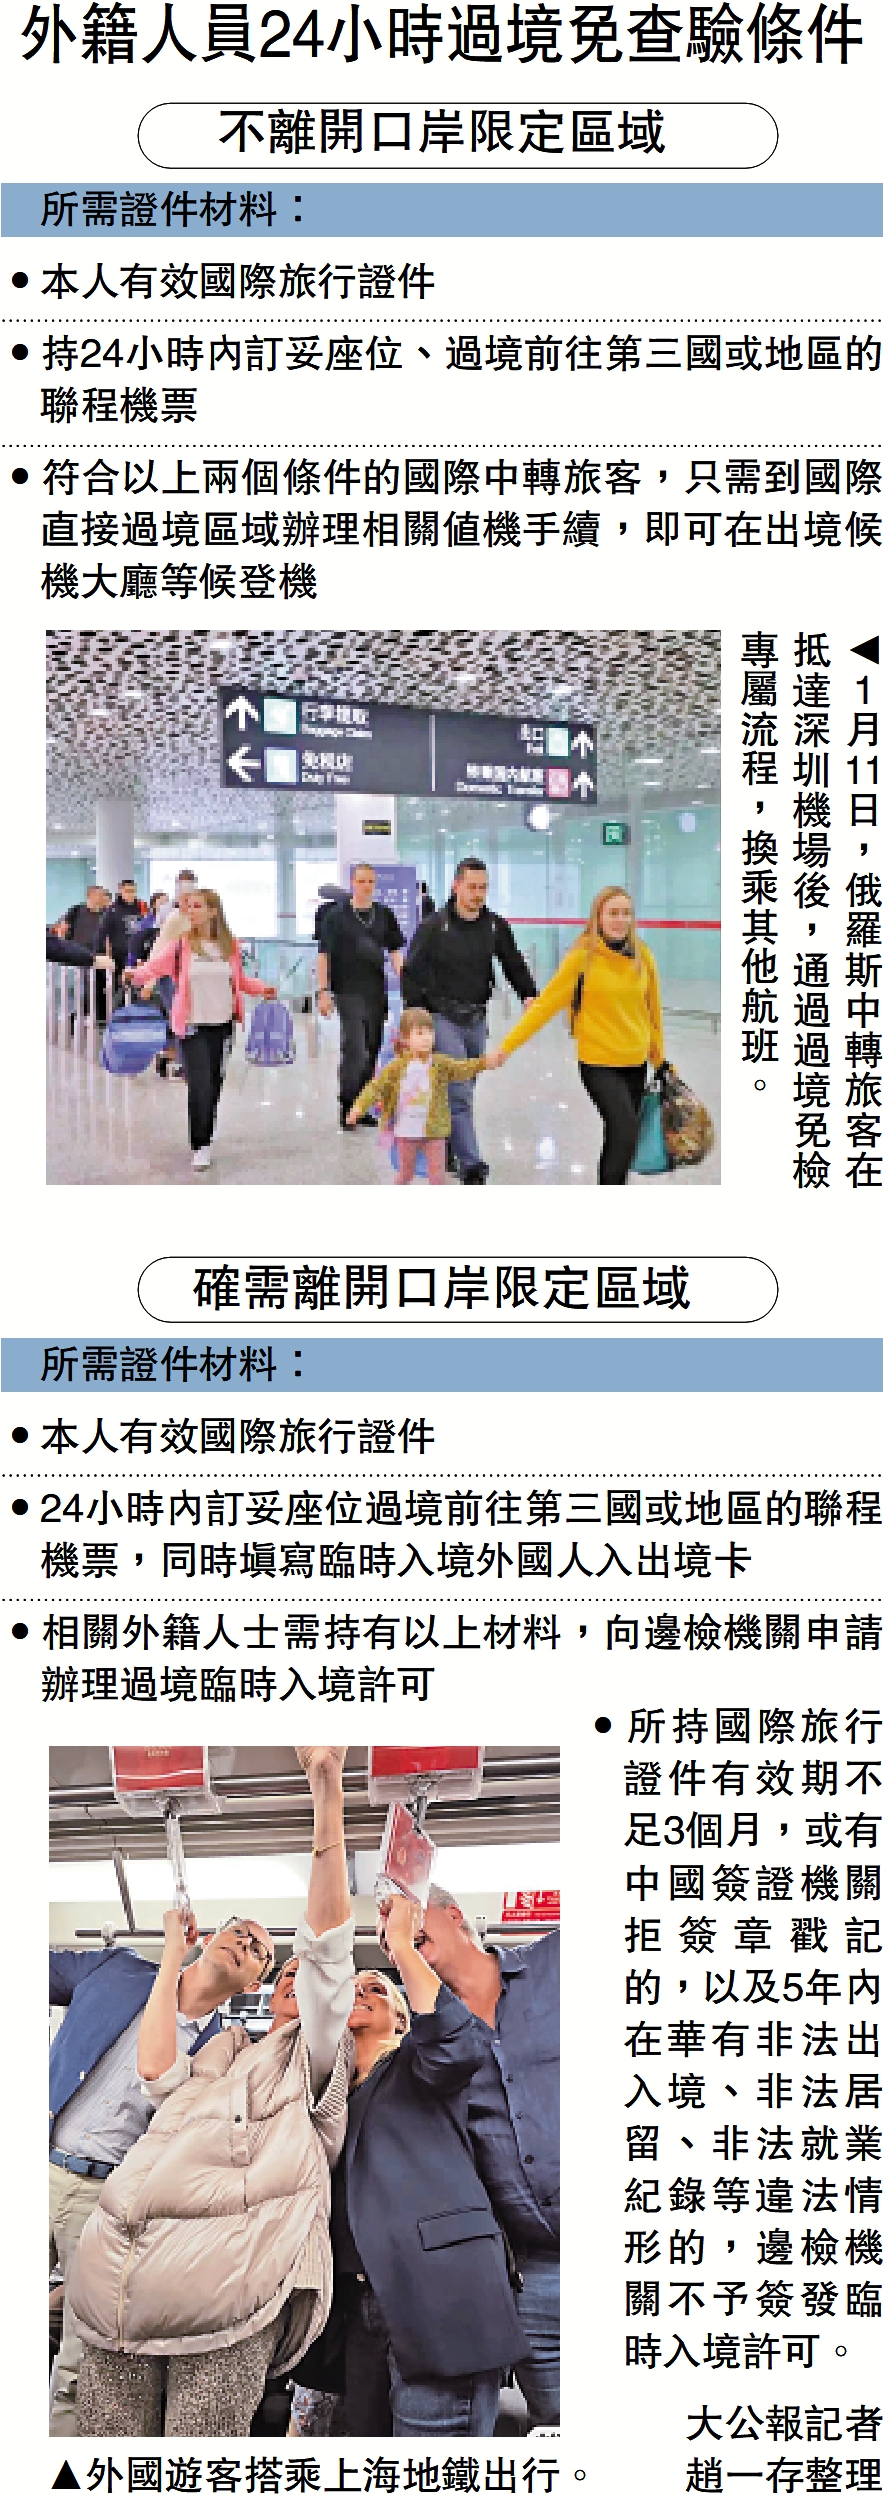 　　上圖：1月11日，俄羅斯中轉旅客在抵達深圳機場後，通過過境免檢專屬流程，換乘其他航班。下圖：外國遊客搭乘上海地鐵出行。